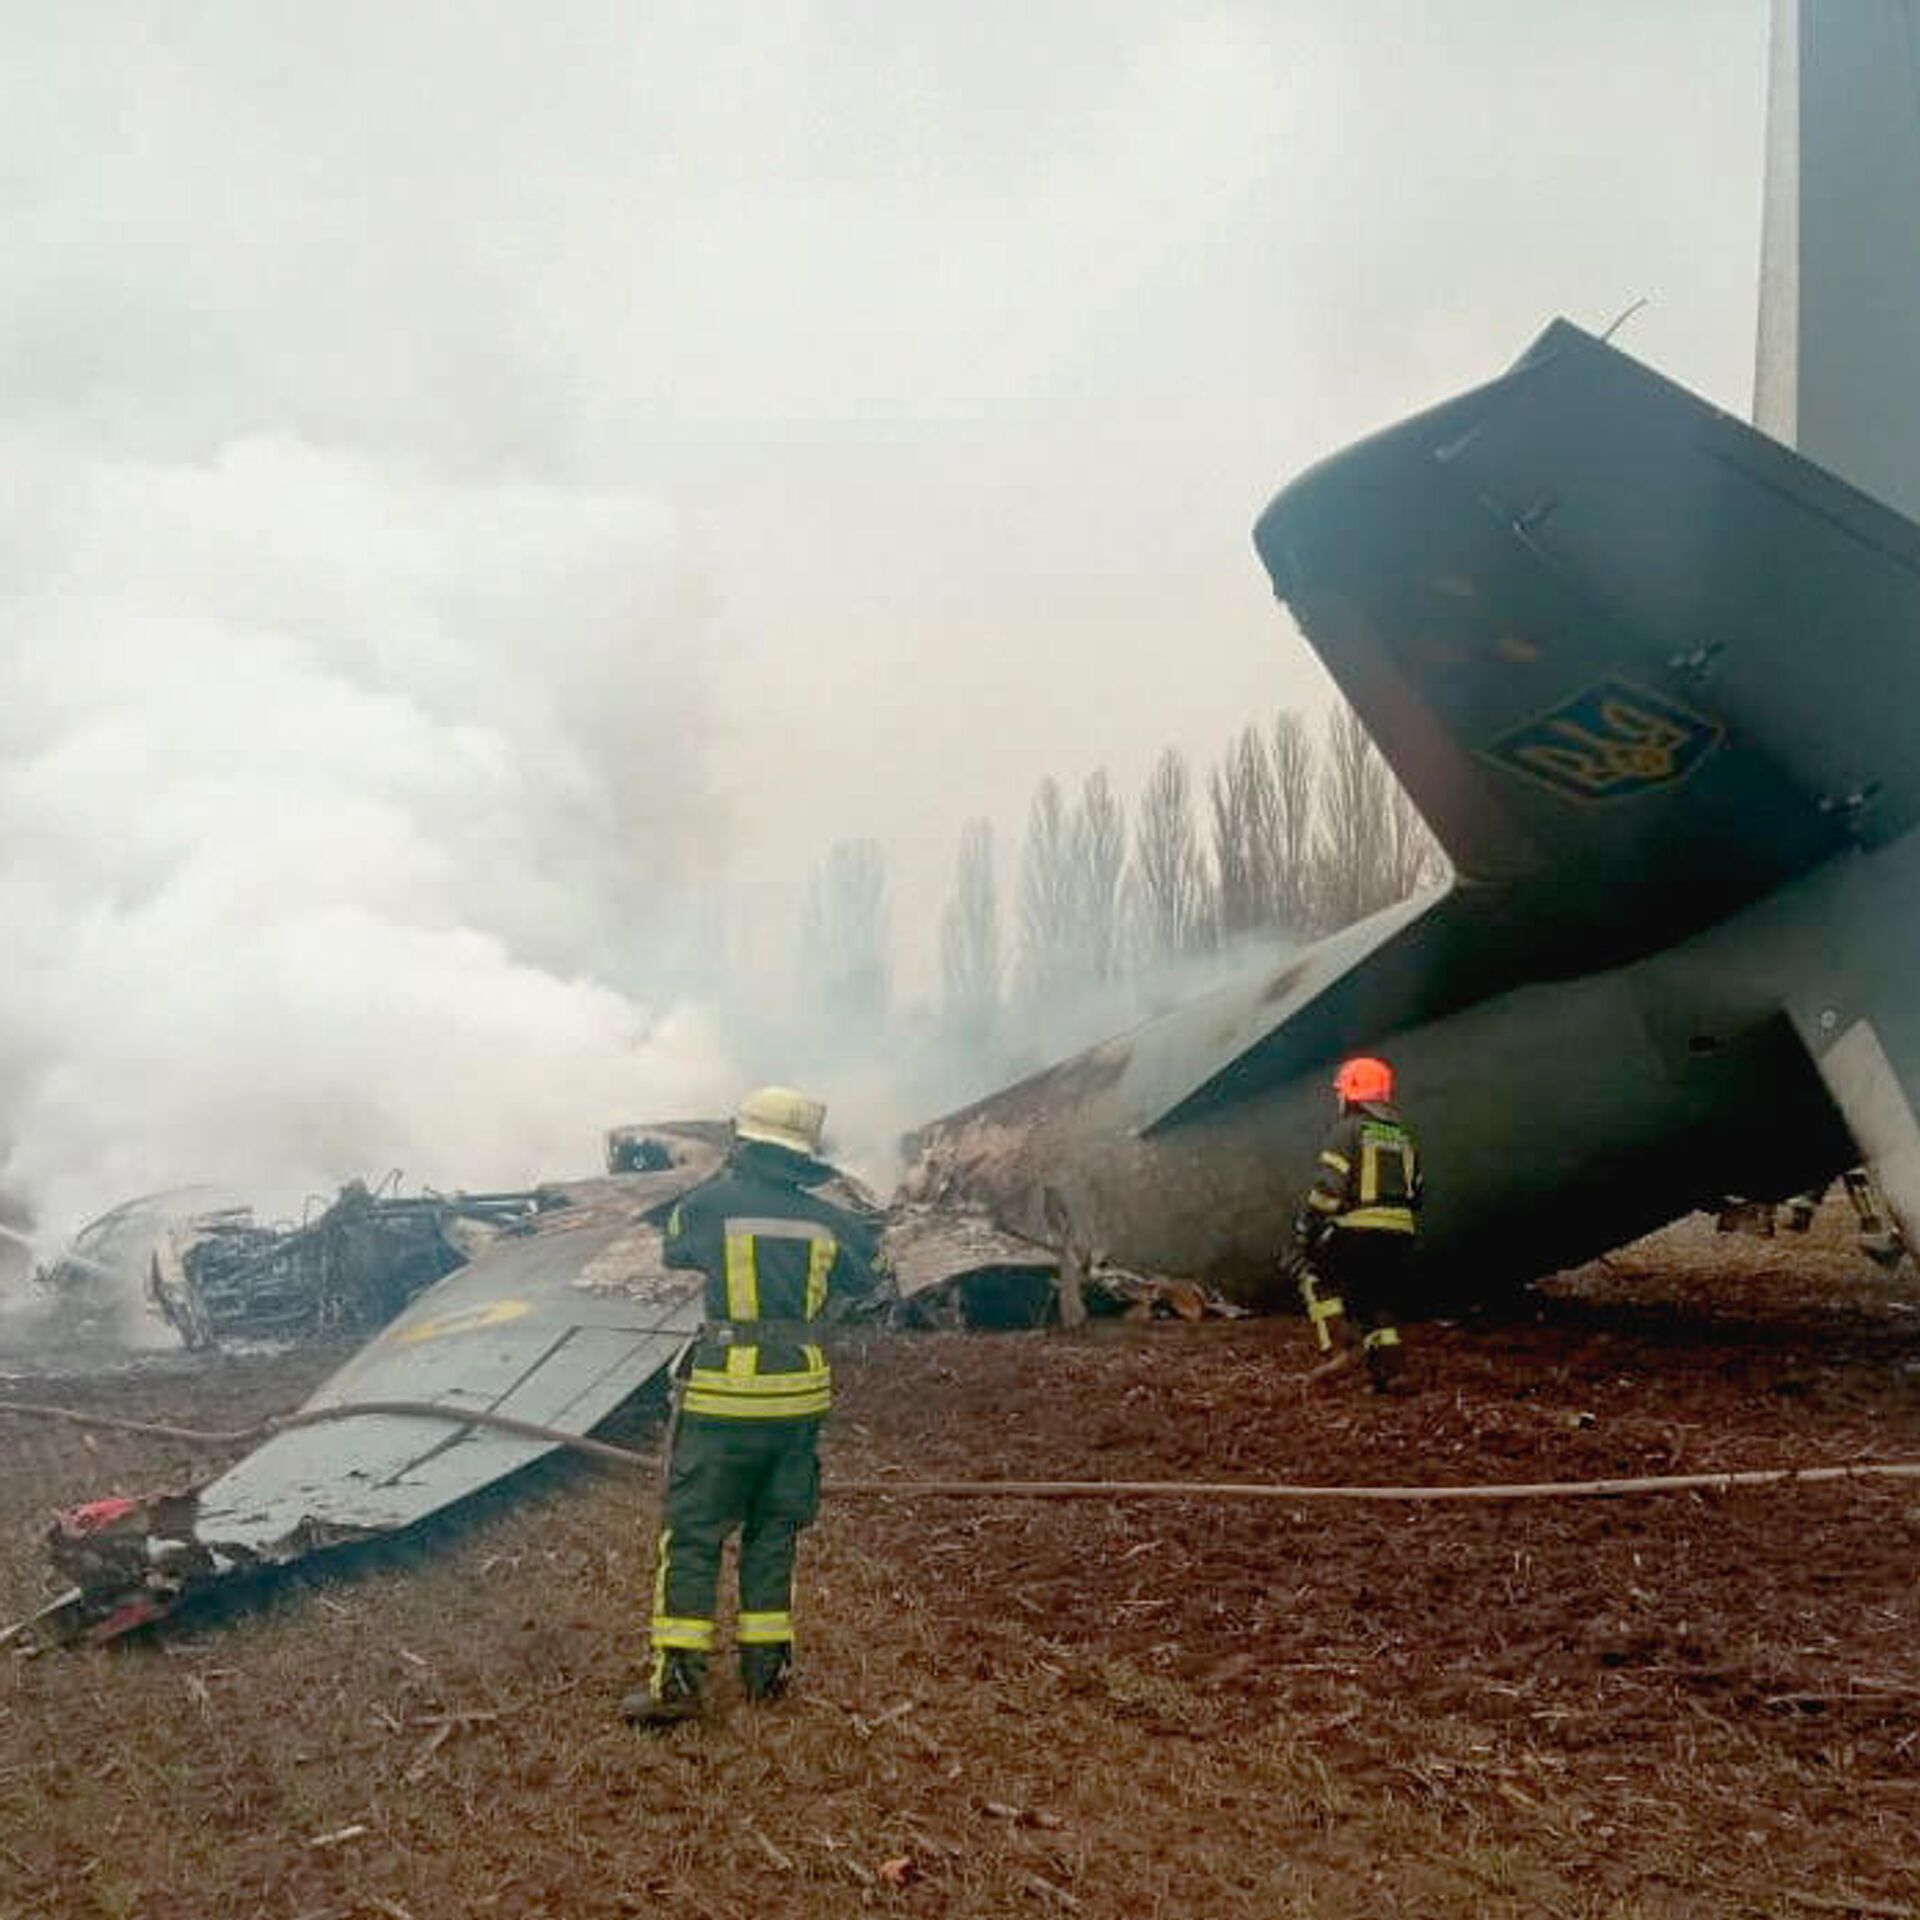 АН-26 Вооруженных сил Украины потерпел крушение